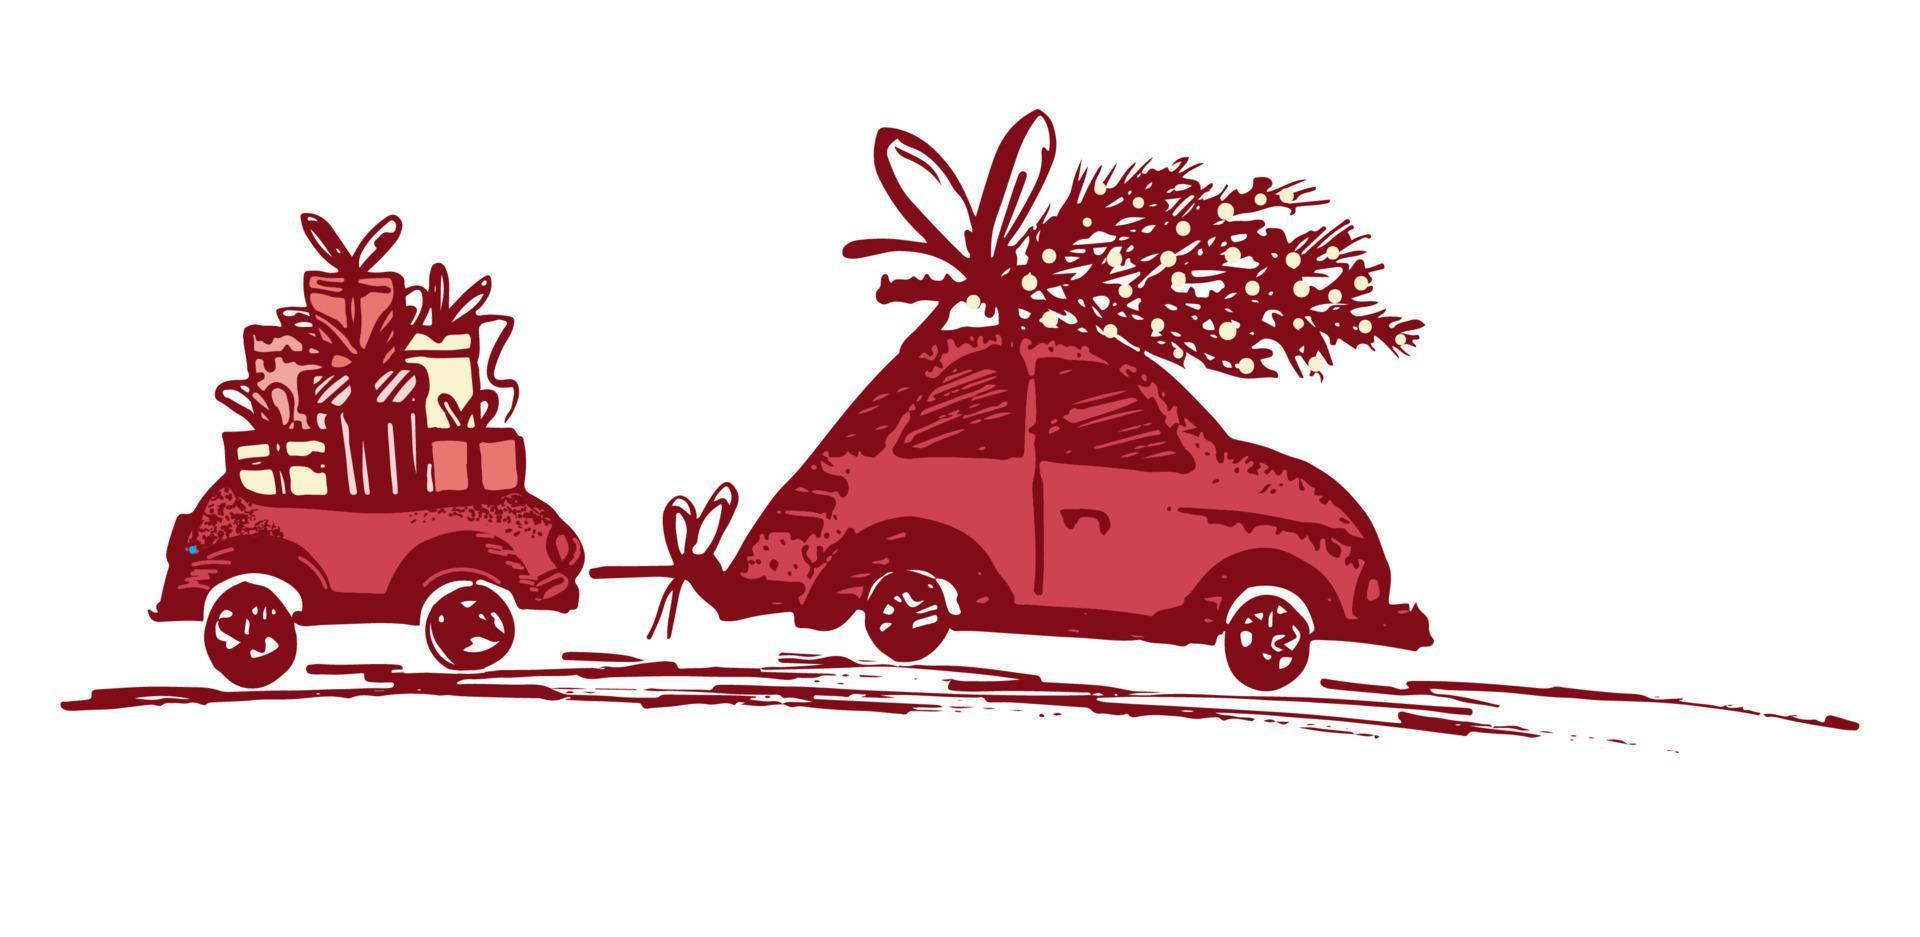 cartão com árvore de natal no teto do carro e reboque do carro com presentes de natal. vetor